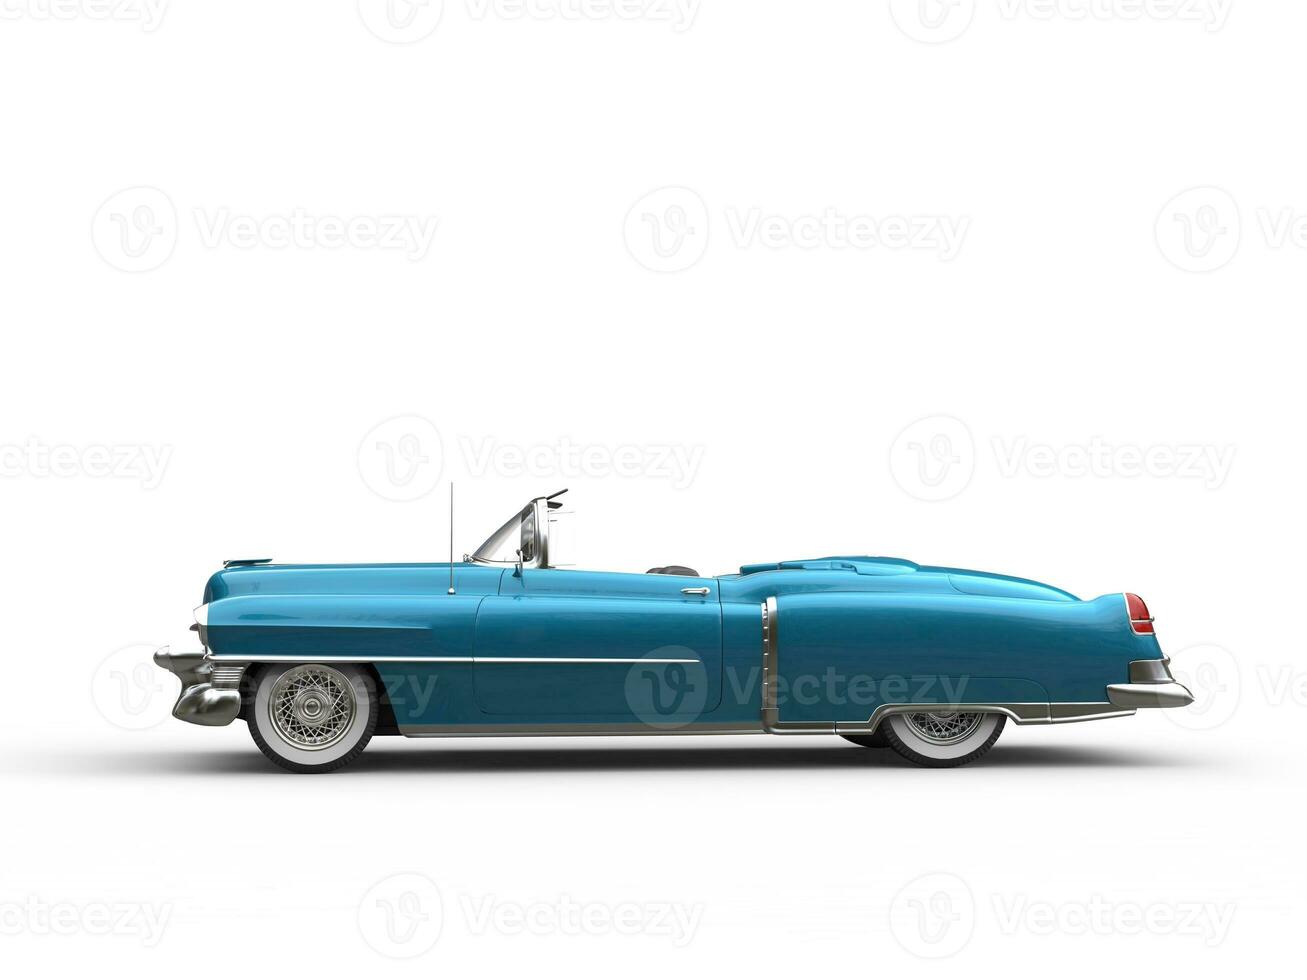 legal vintage carro - metálico azul - lado Visão foto